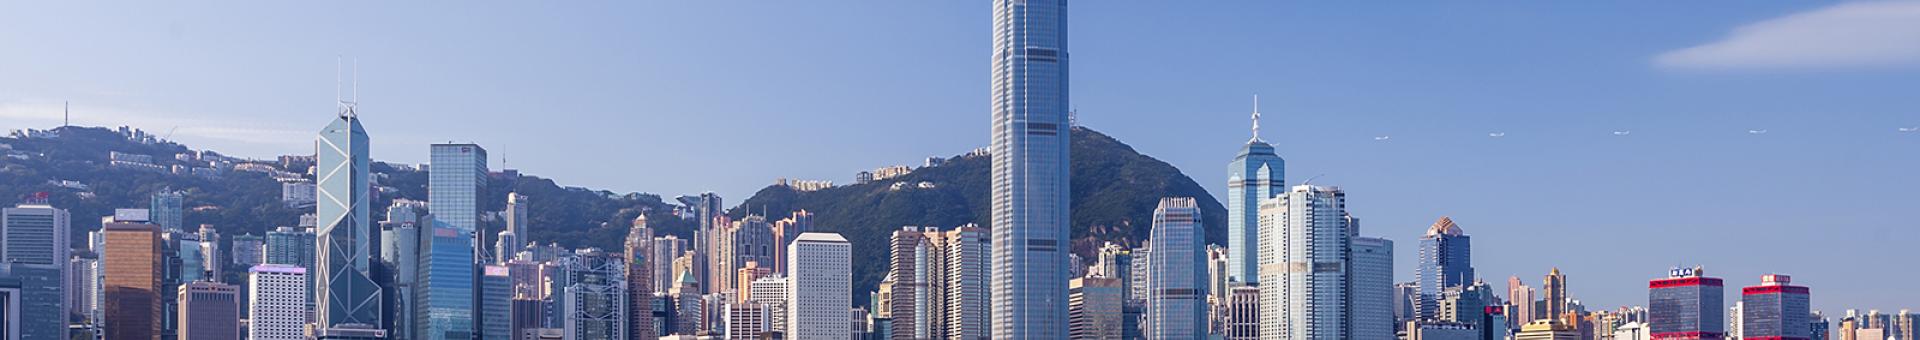 Les marchés occultent la crise à Hong Kong